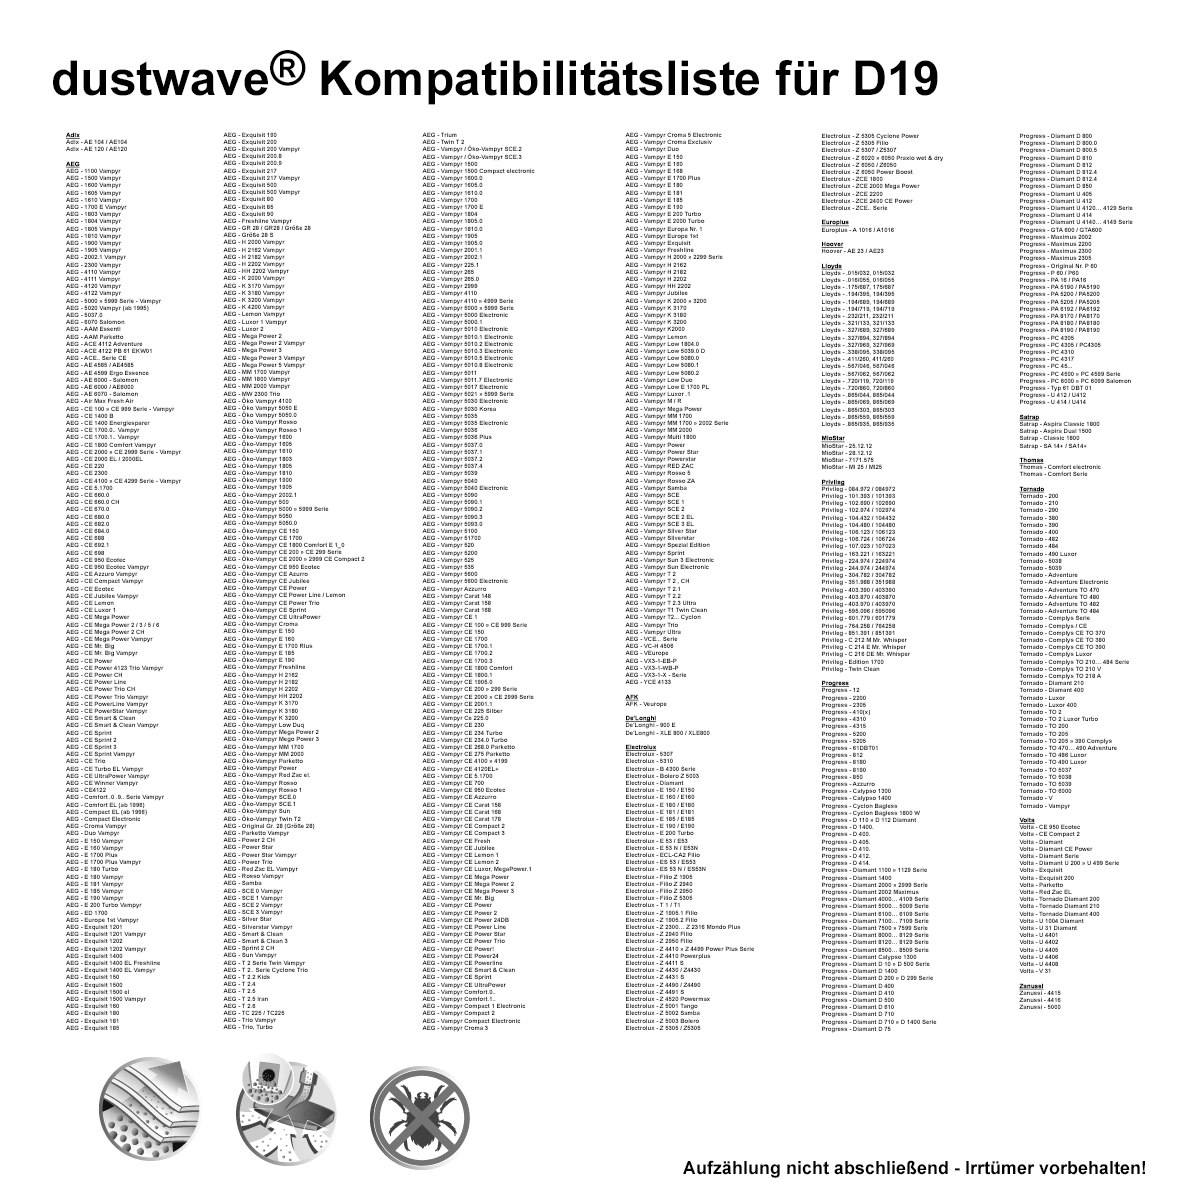 Dustwave® 20 Staubsaugerbeutel für AEG Vampyr 5000.1 - hocheffizient mit Hygieneverschluss - Made in Germany